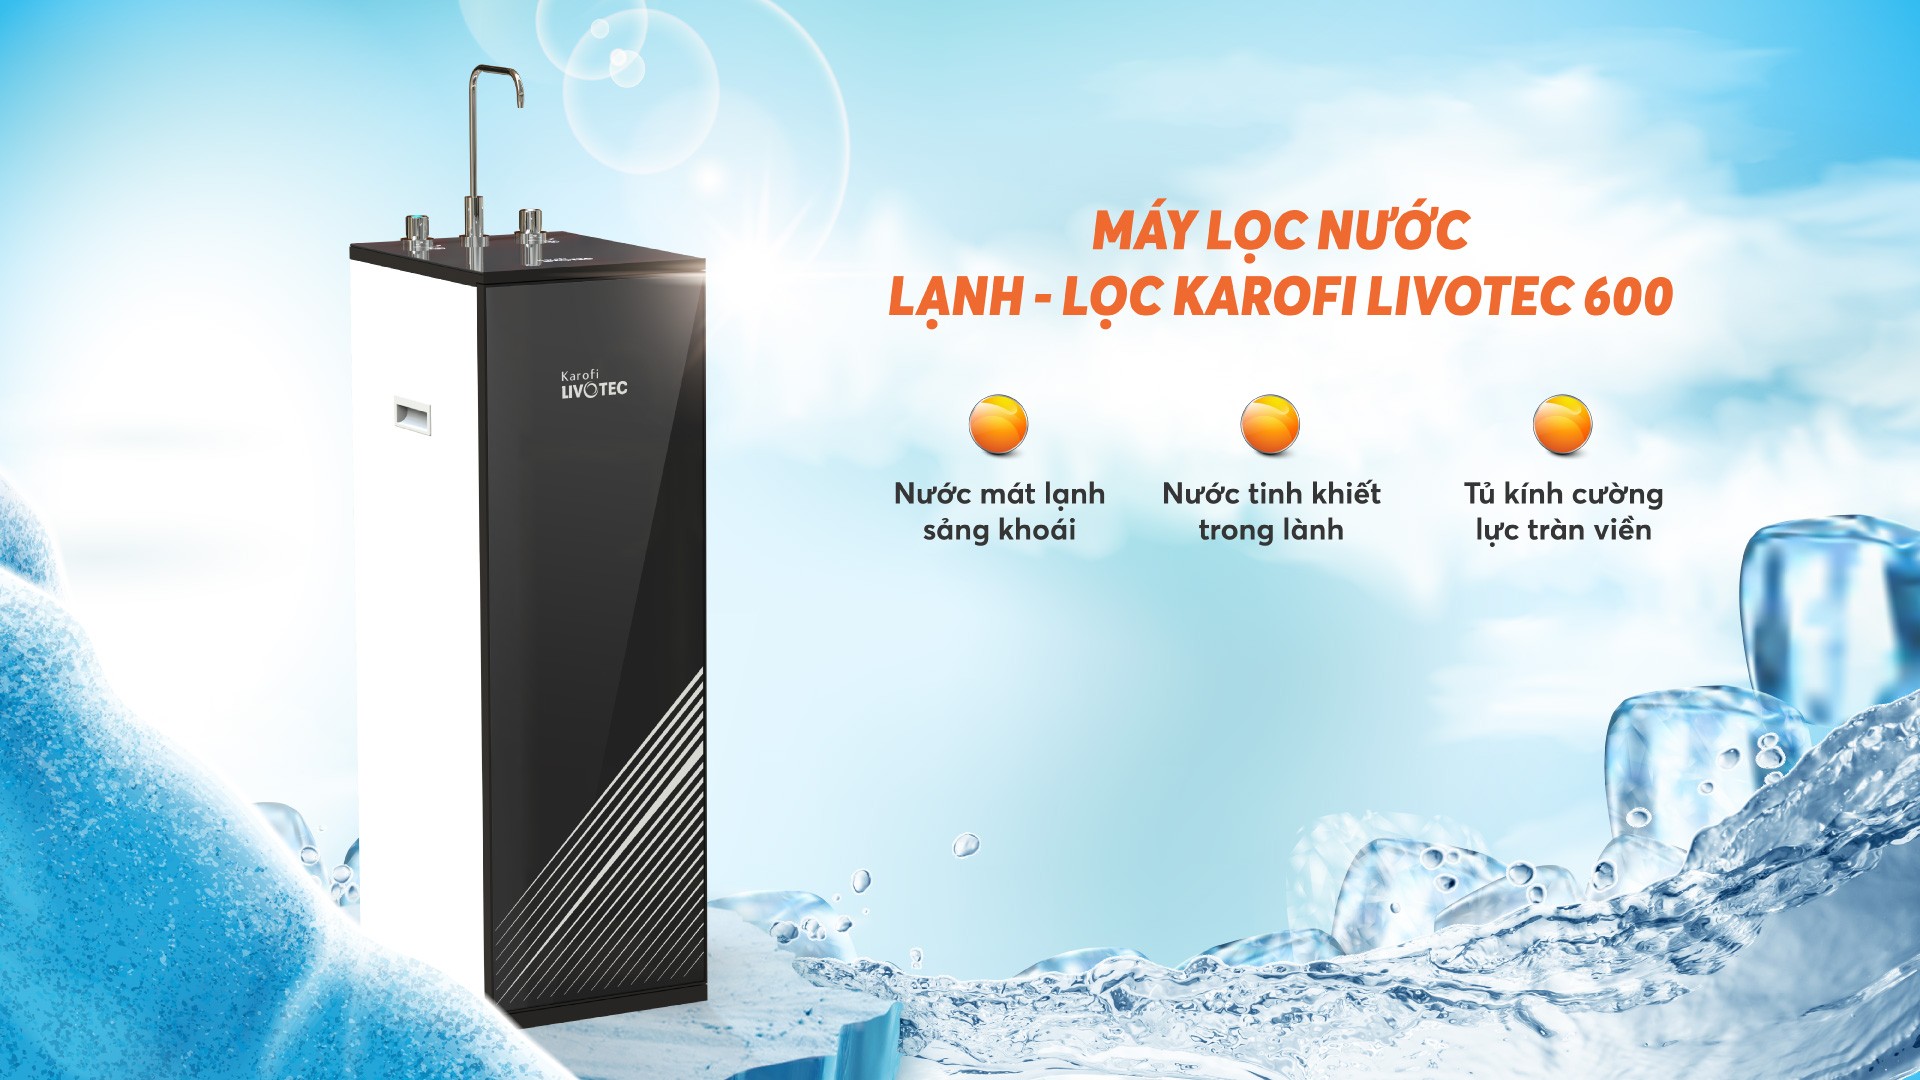 Giới thiệu về máy lọc nước lạnh nguội Karofi Livotec 600